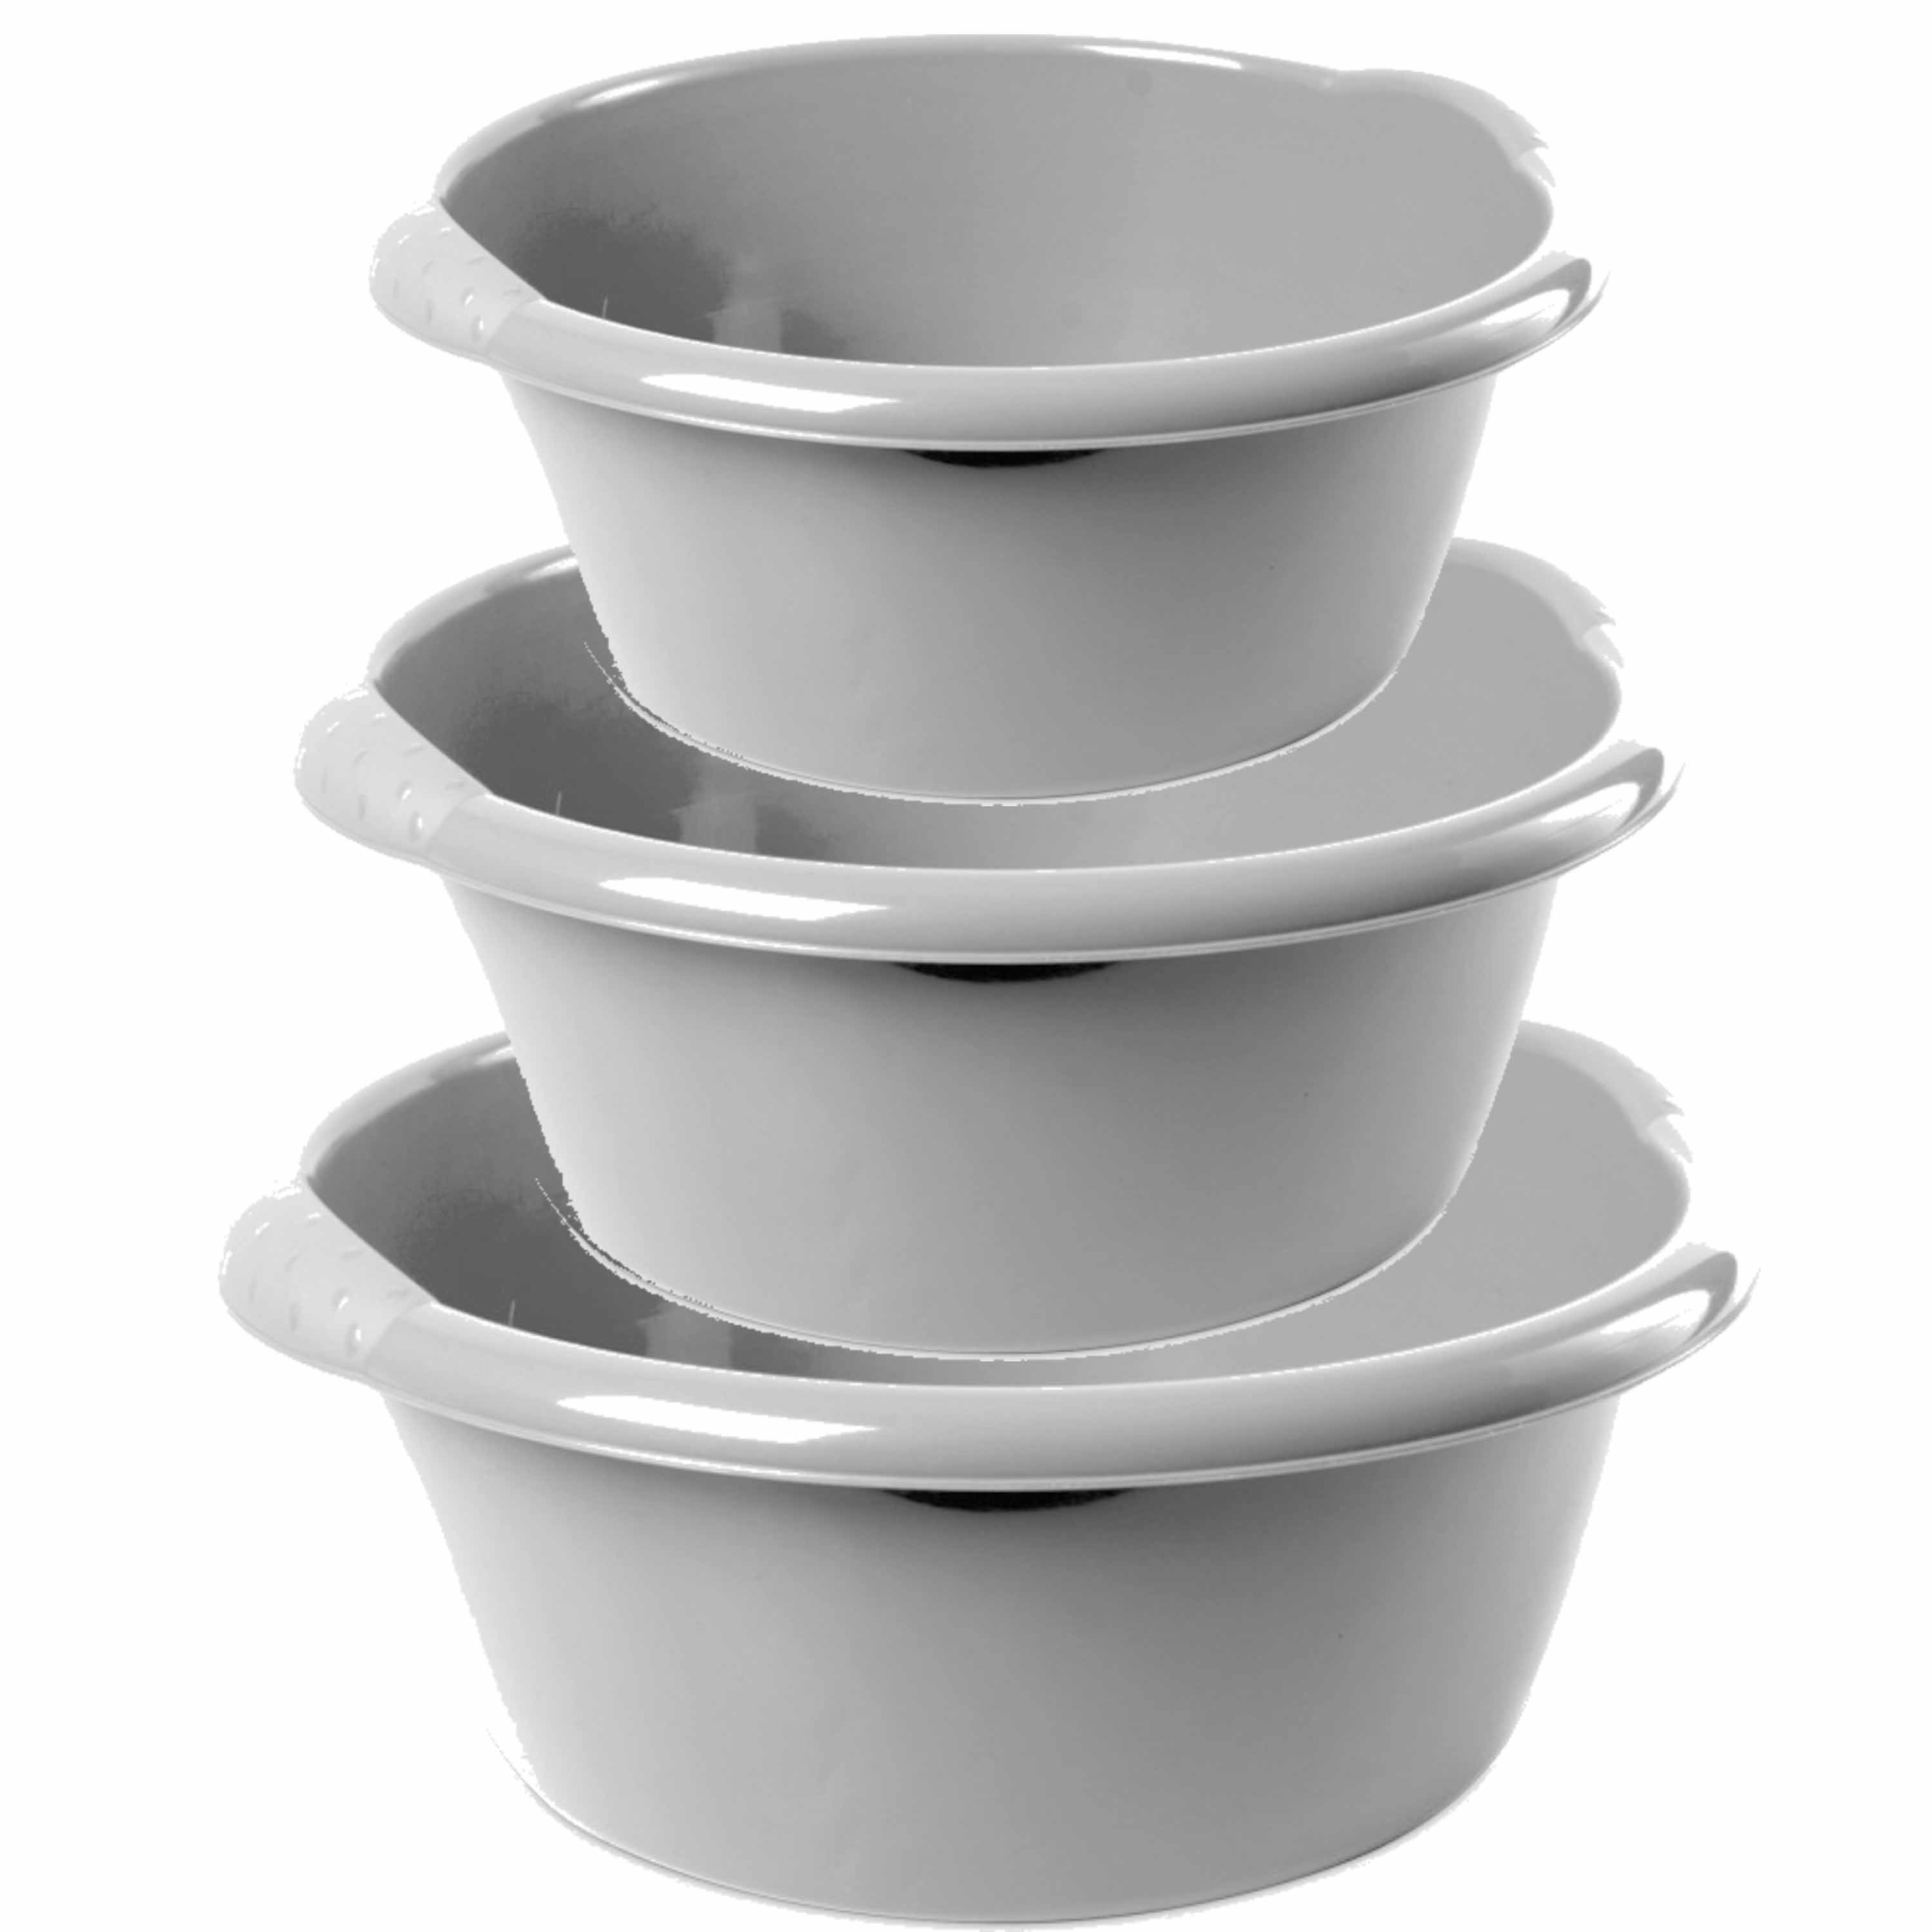 Hega Hogar Combi set van 3x stuks ronde afwasteiltjes/afwasbakken in het zilver 6-10-15 liter -